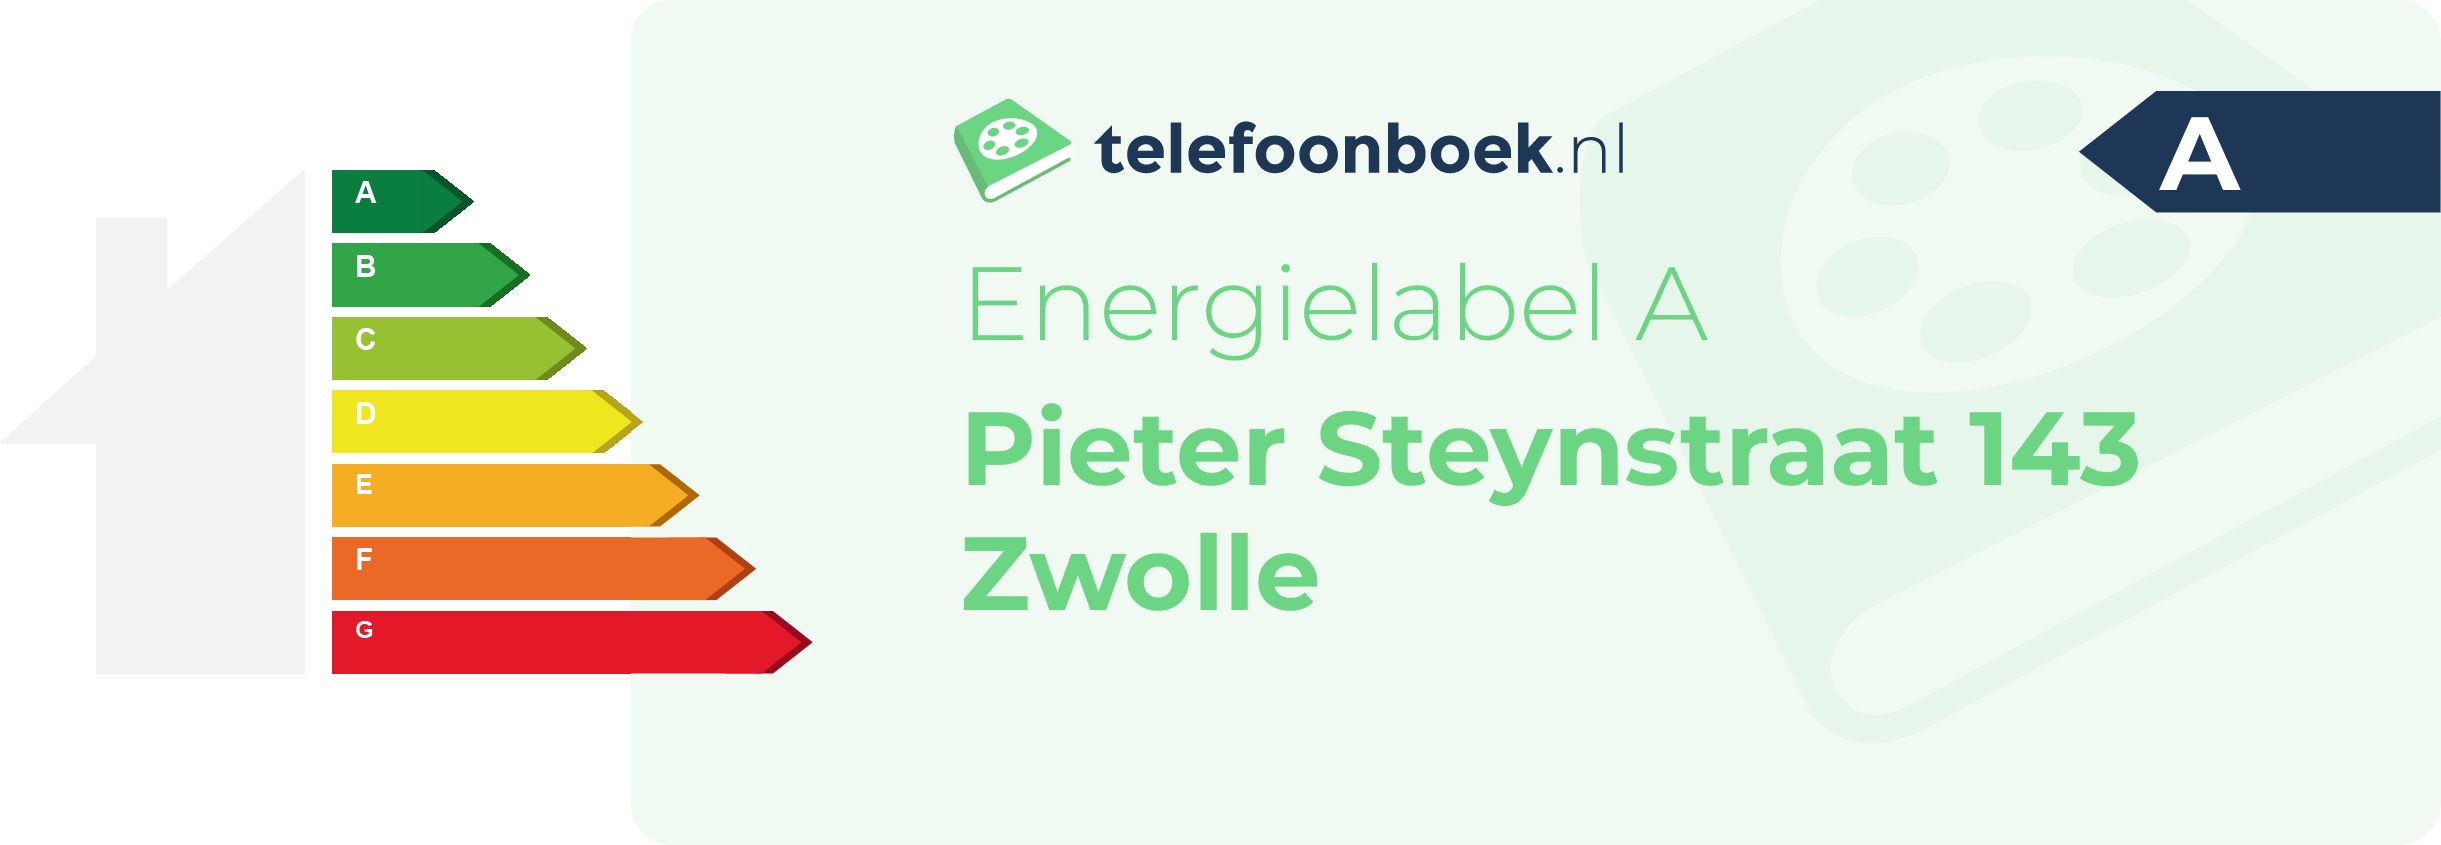 Energielabel Pieter Steynstraat 143 Zwolle